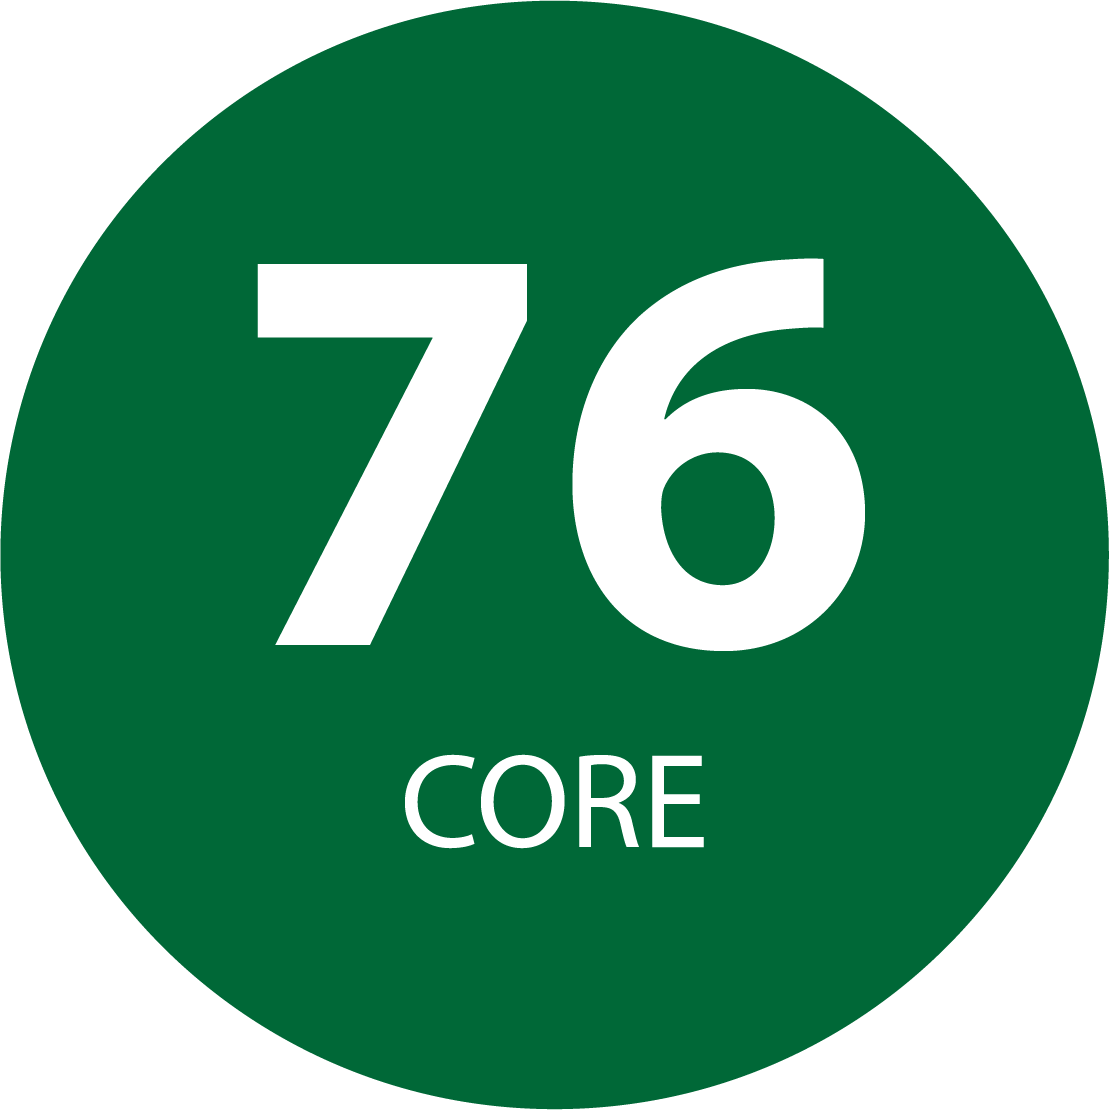 76 Core